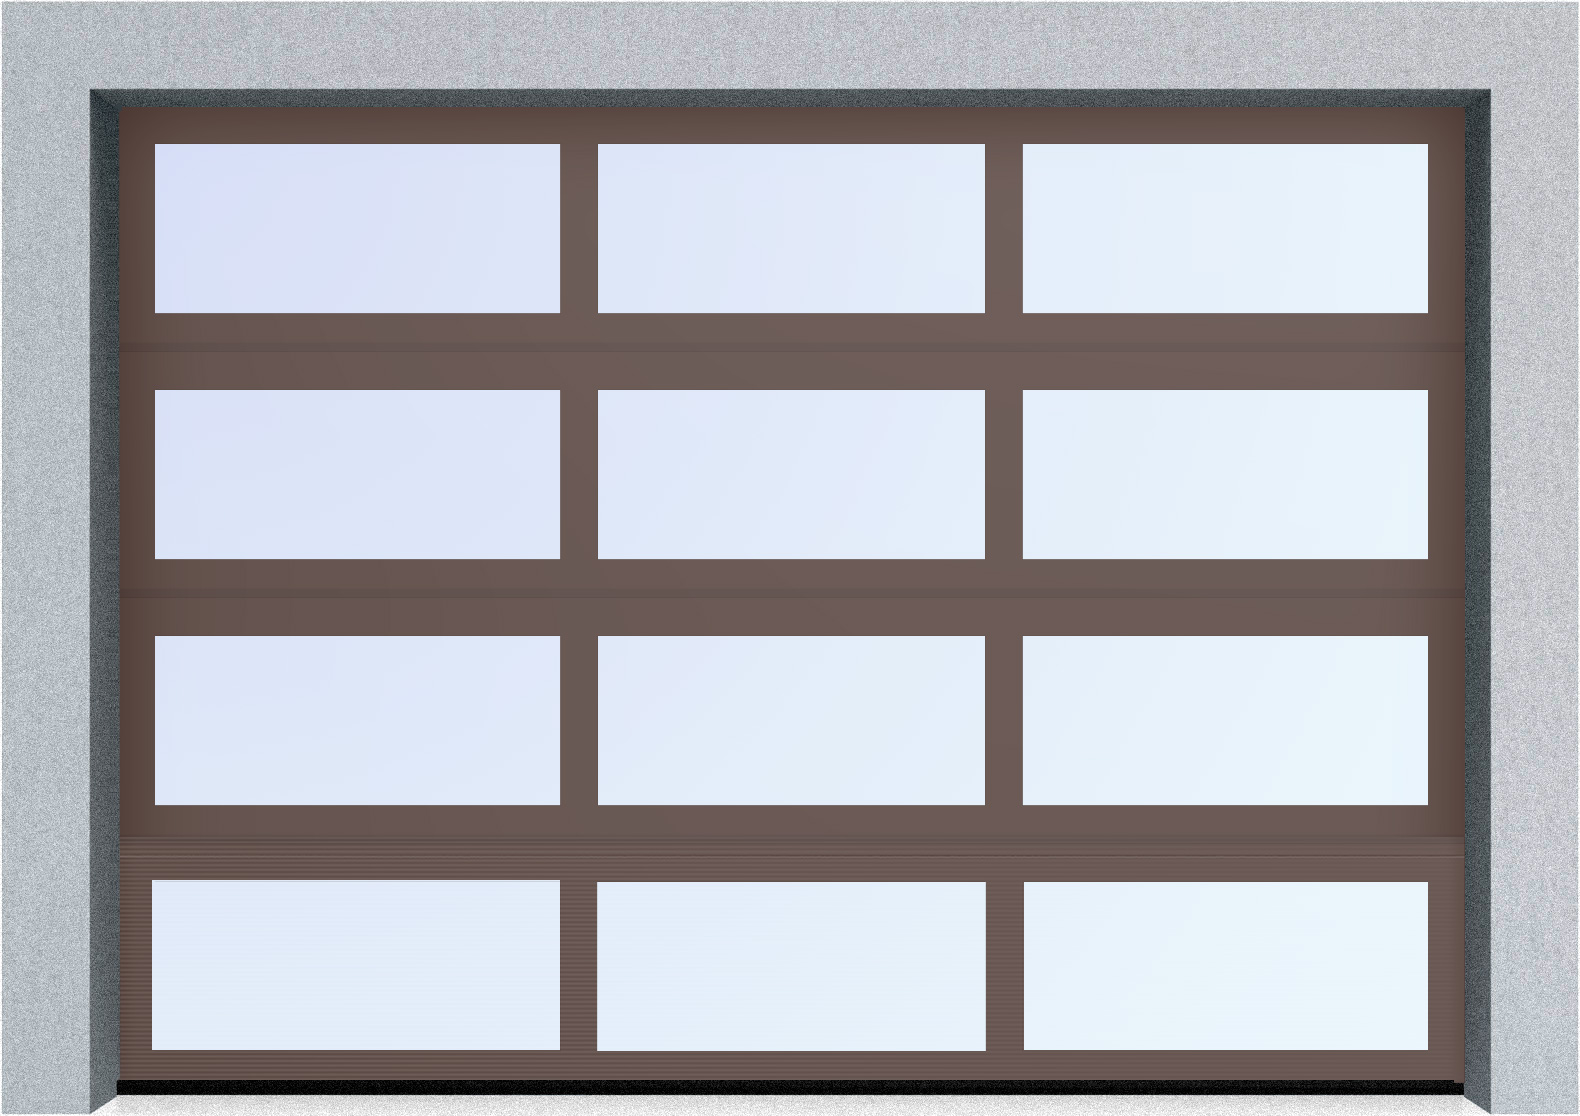  Секционные панорамные ворота серии AluTrend (АЛП) 2500х2500 нижняя панель стандартные цвета, фото 7 